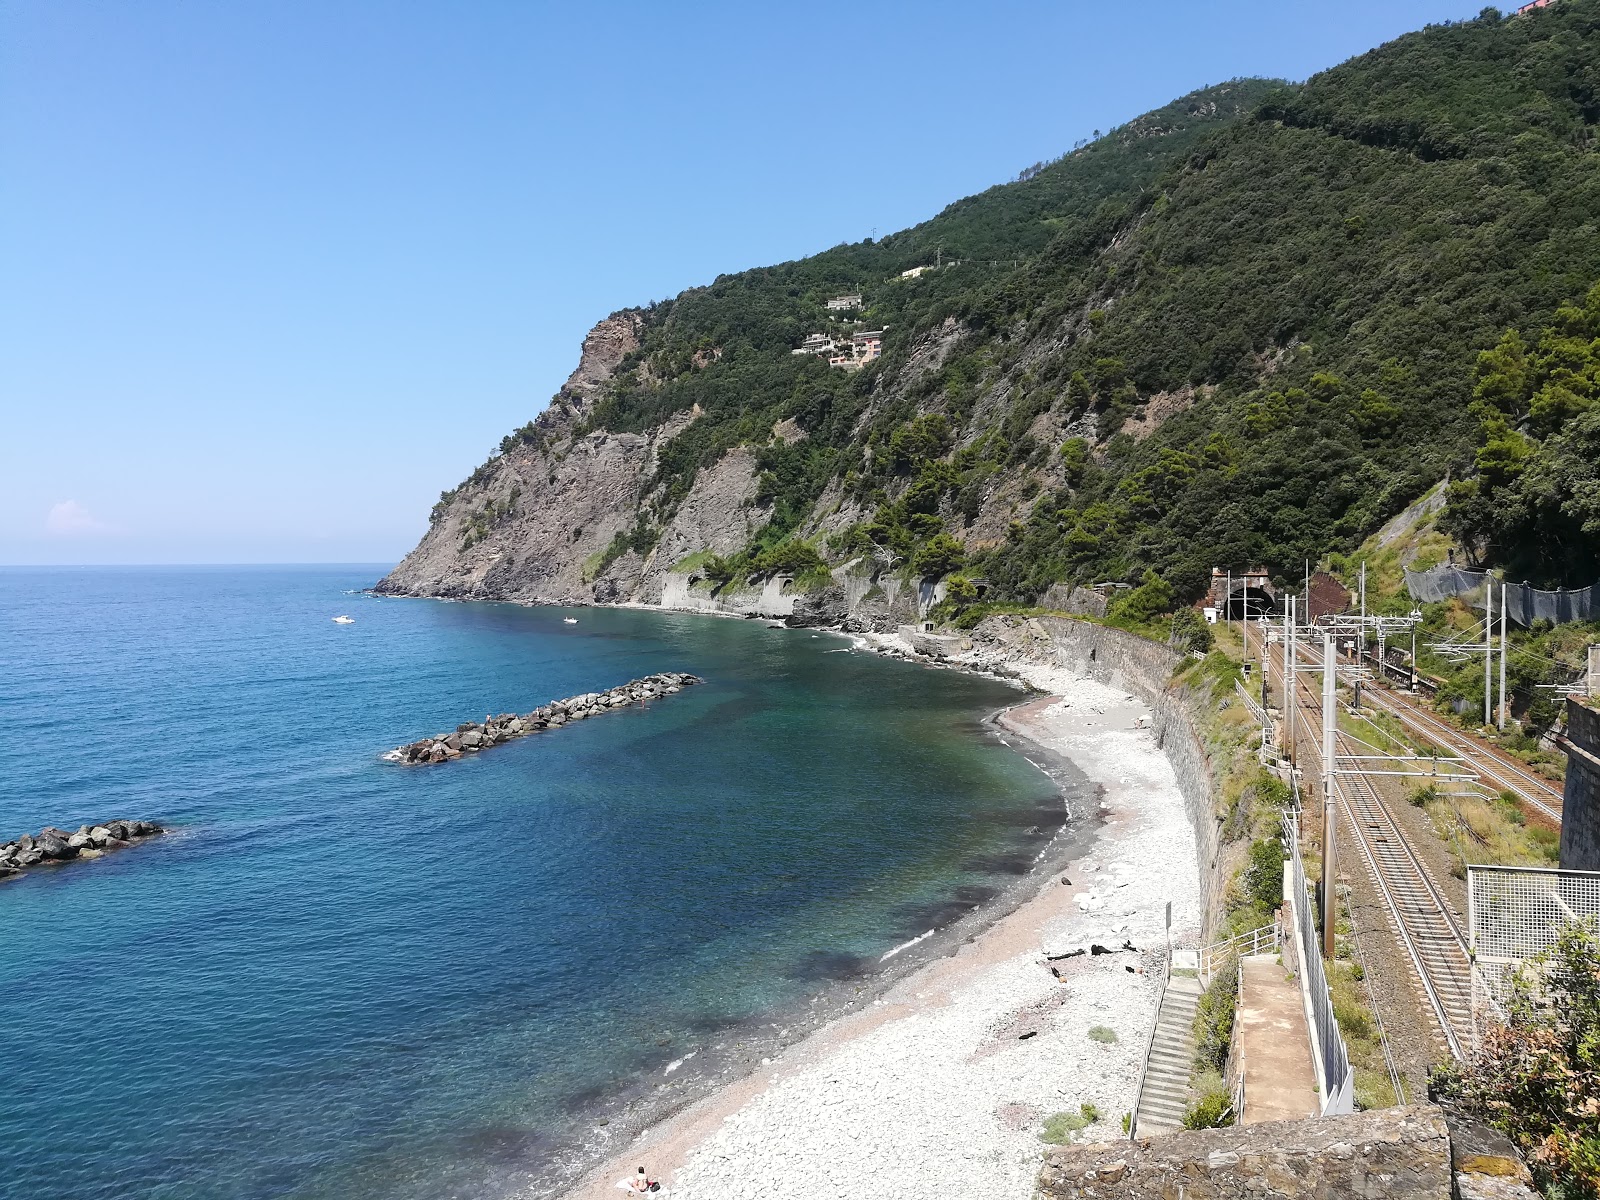 Fotografija Spiaggia di Framura nahaja se v naravnem okolju